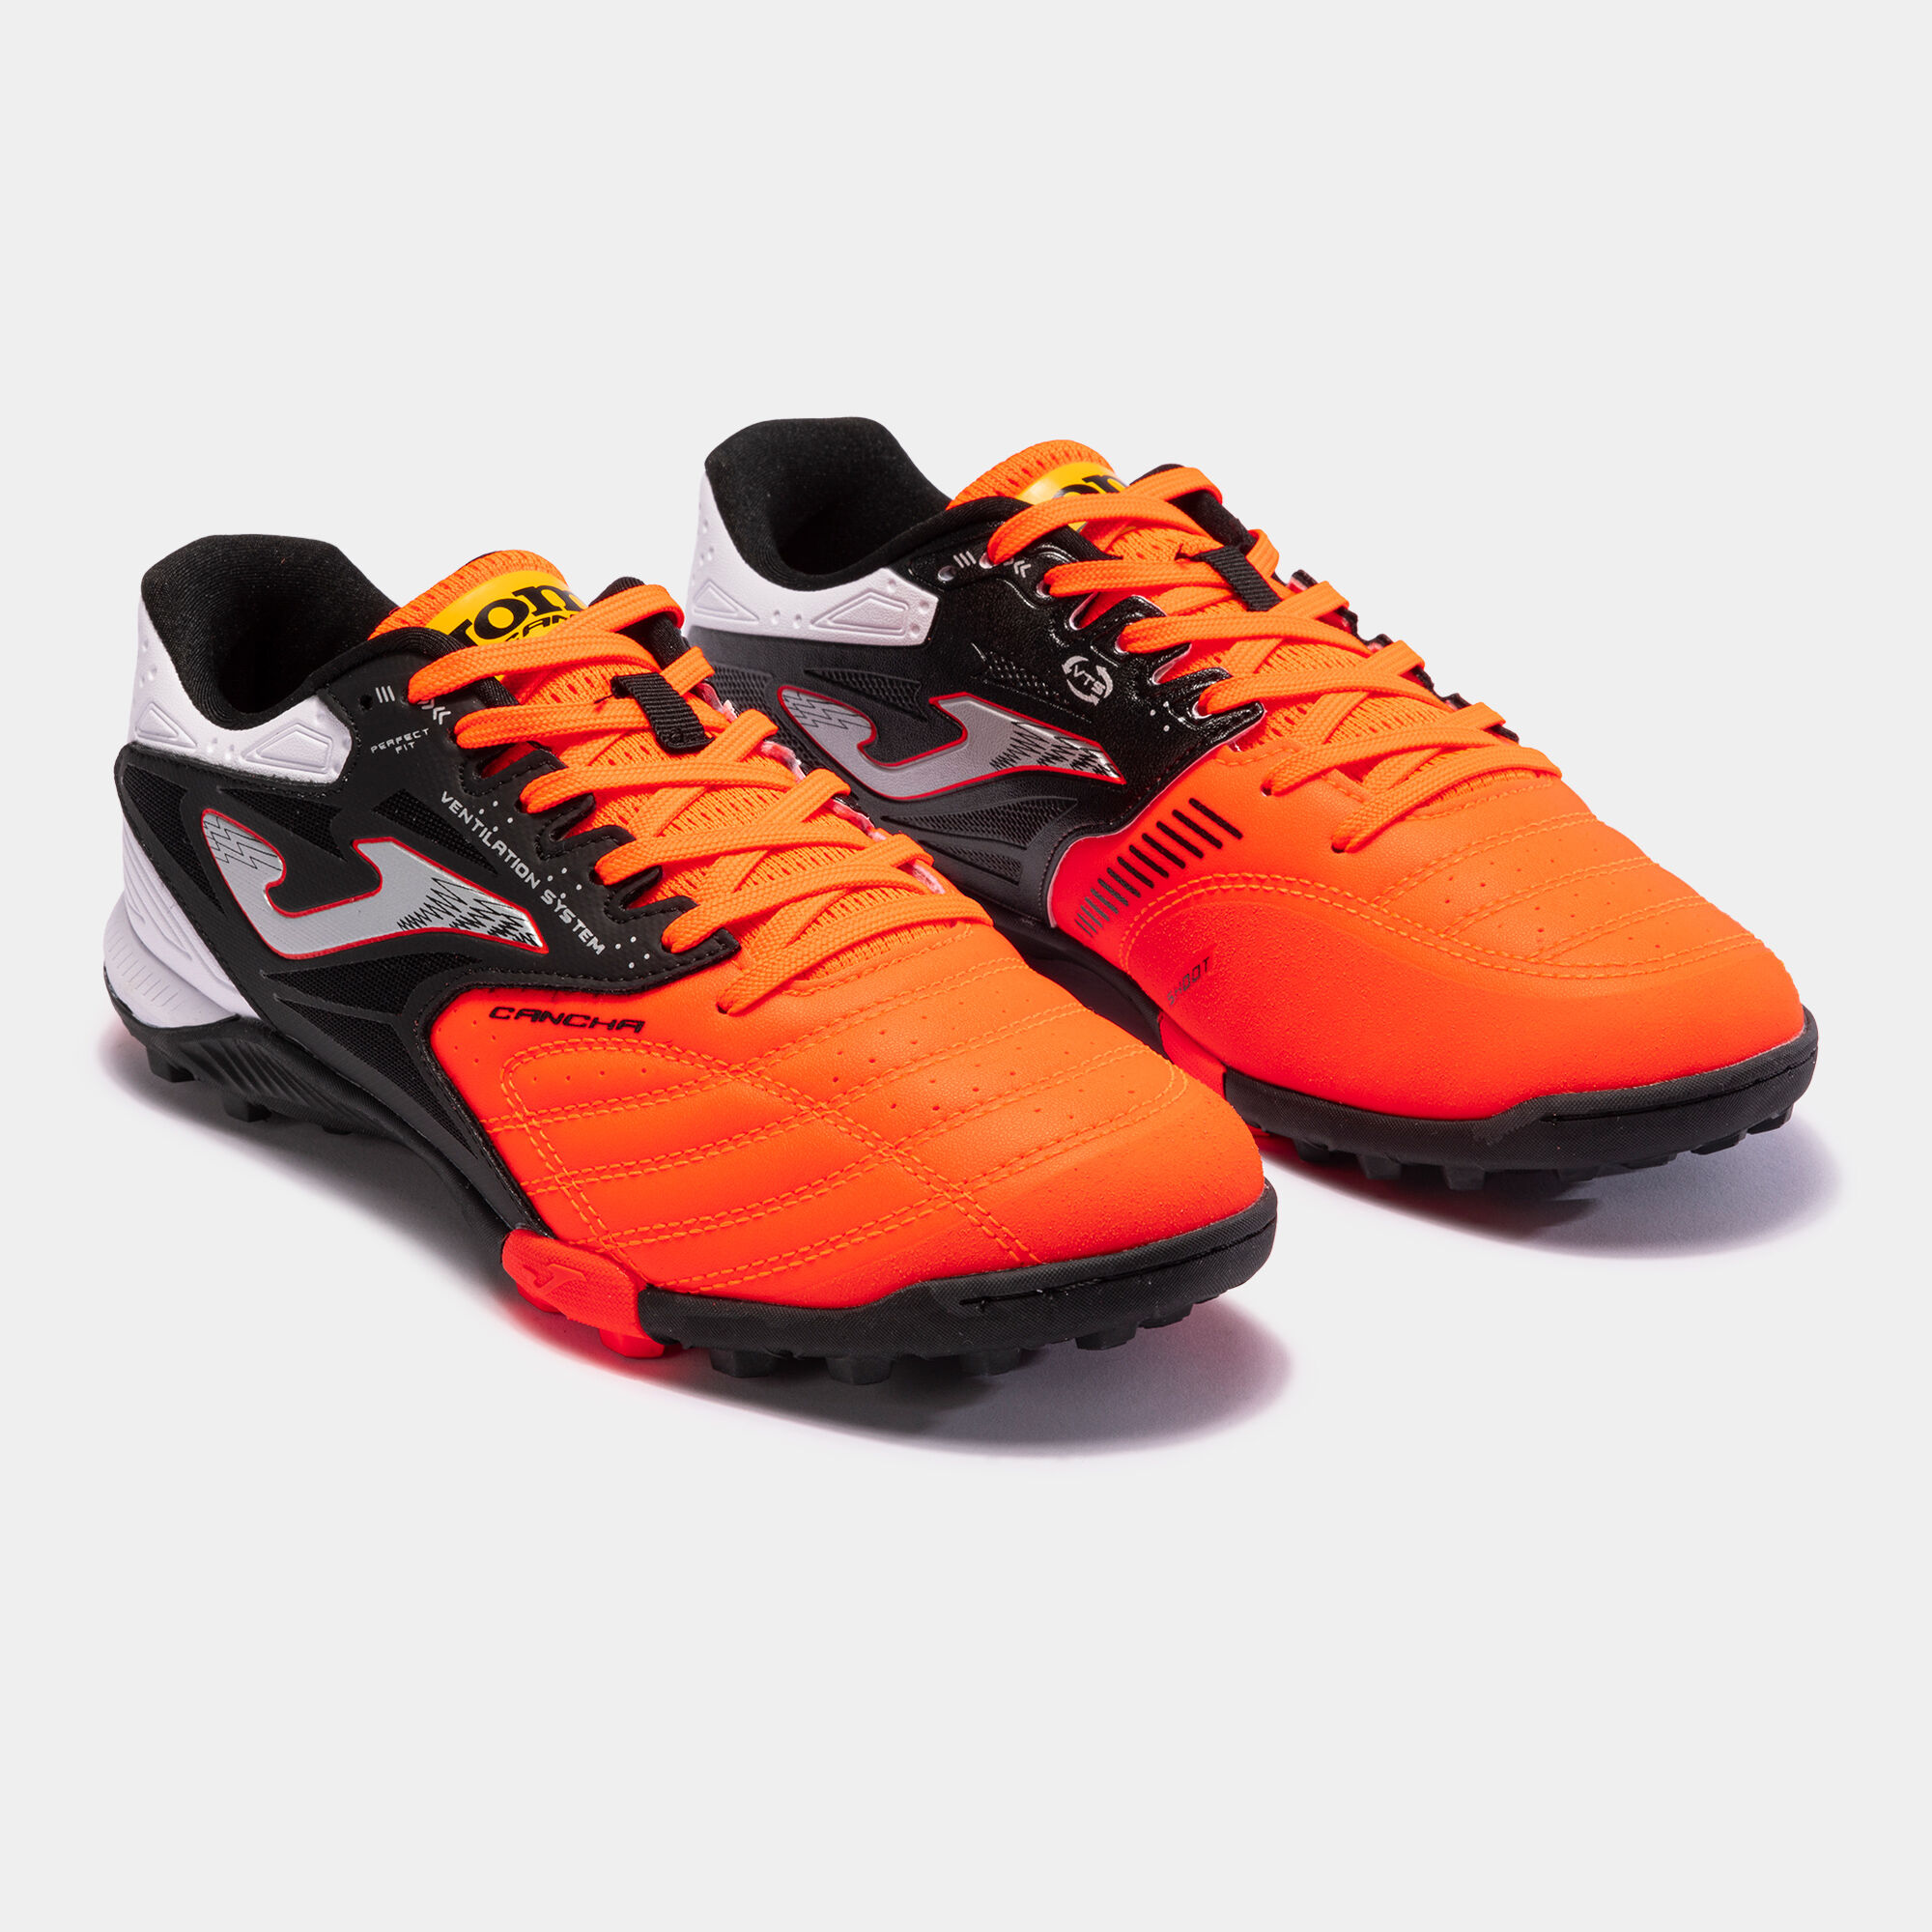 Botas de fútbol para moqueta - Turf. Nike ES